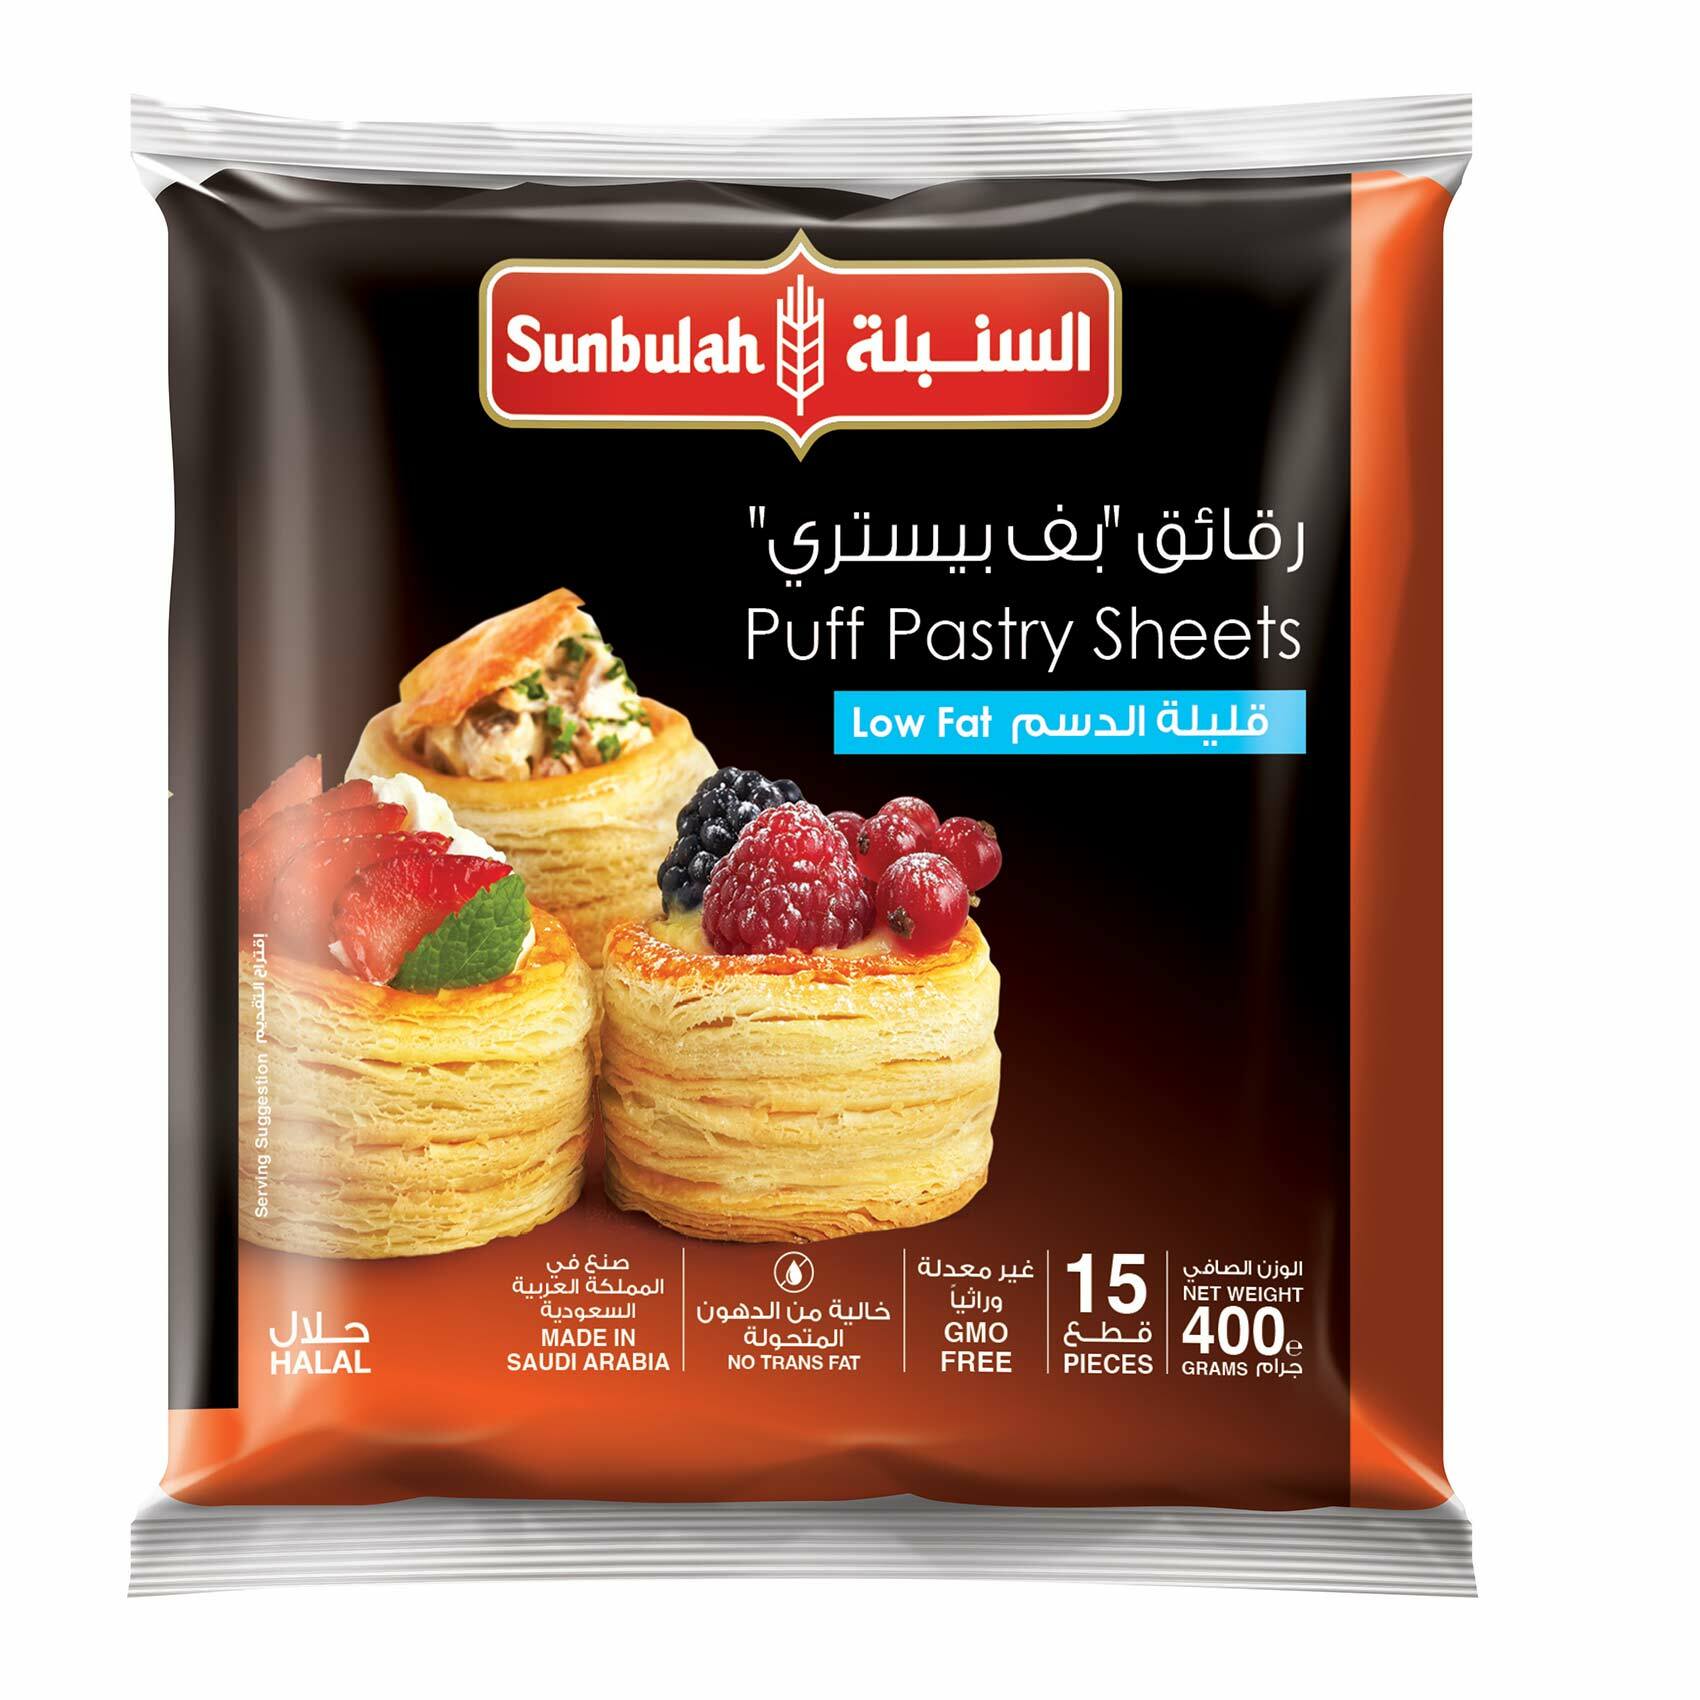 اشترِ السنبلة بف باستري مربعة قليلة الدسم 400 غ تسوق عبر الإنترنت أطعمة مجمدة على كارفور المملكة العربية السعودية